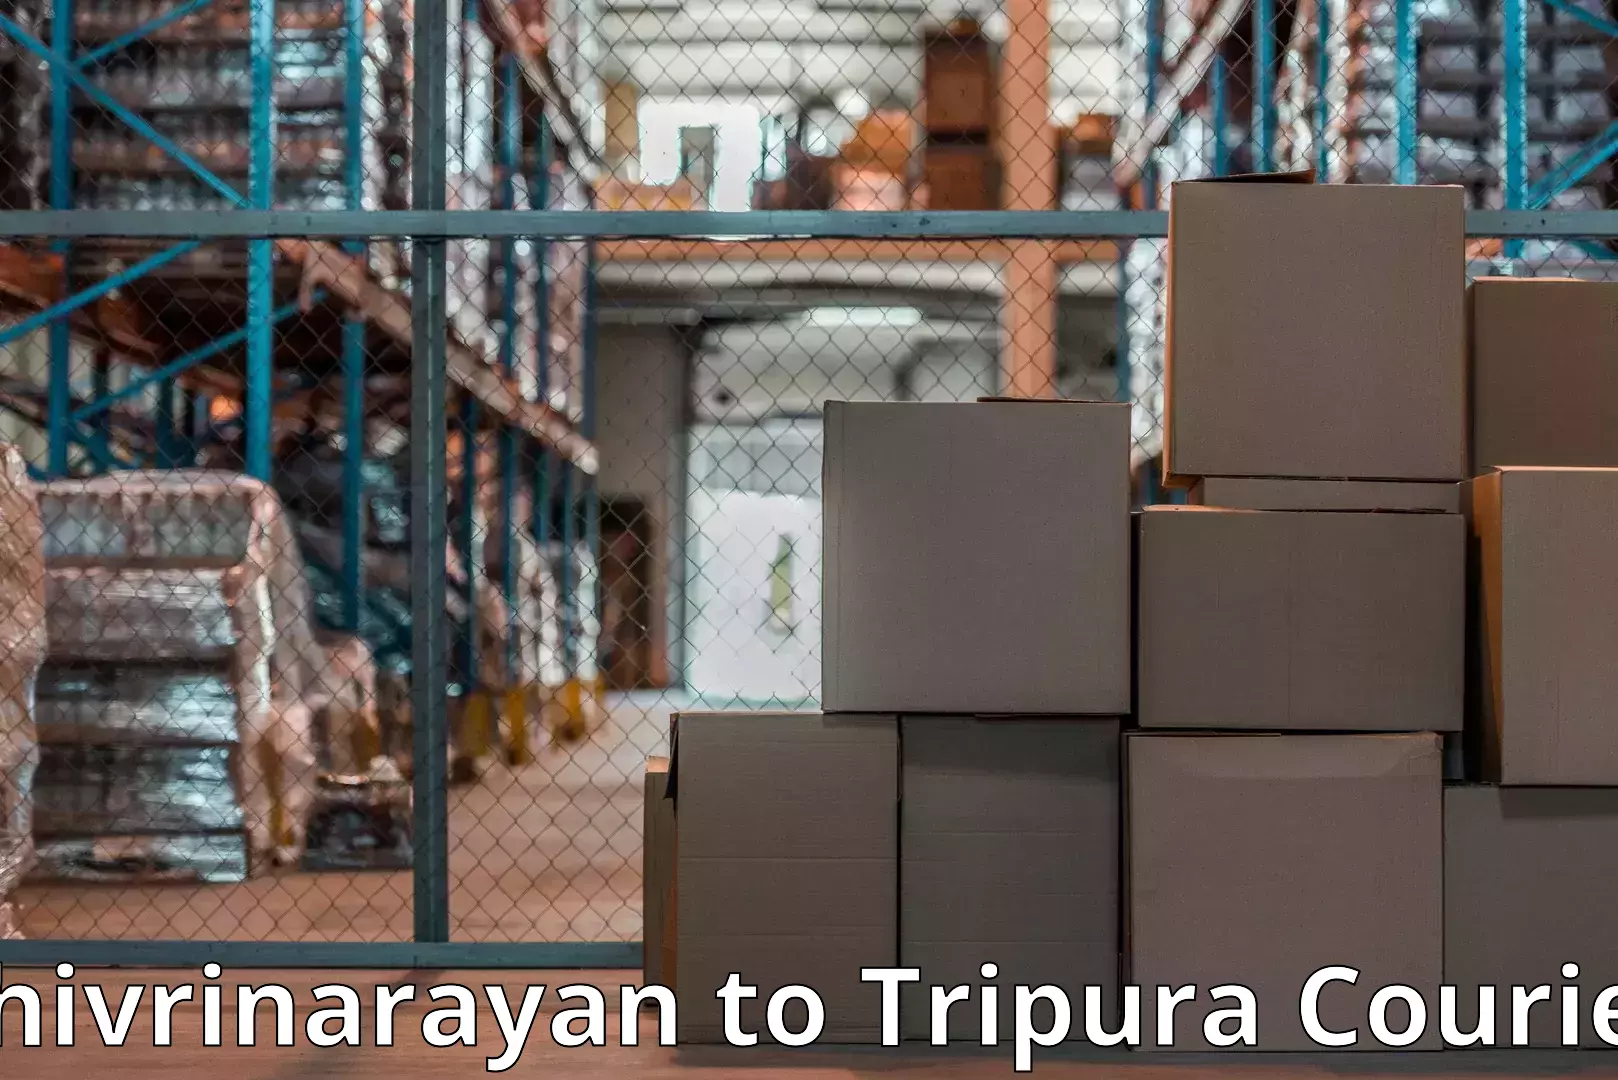 Professional movers and packers Shivrinarayan to Ambassa